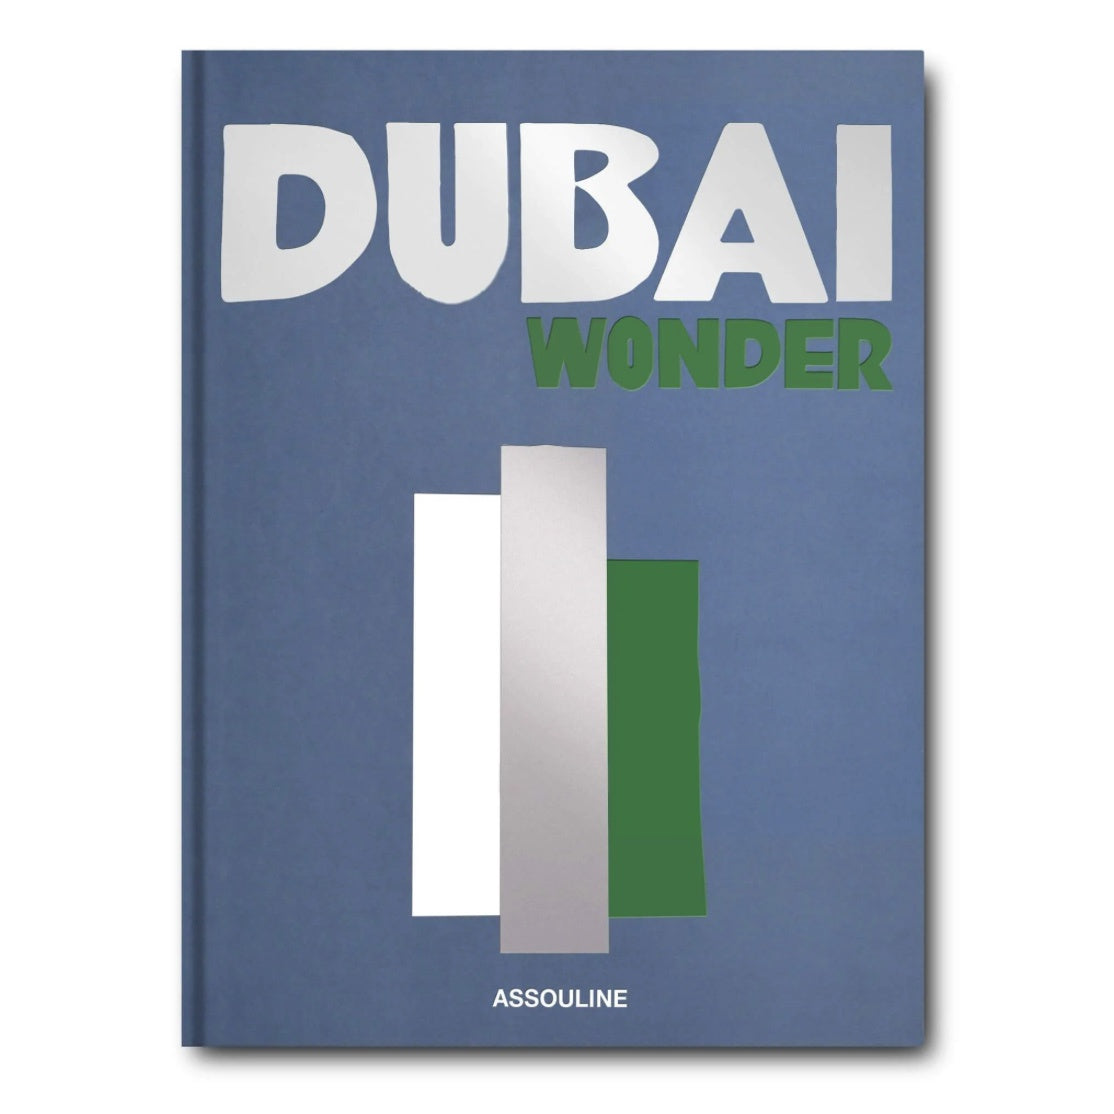 DUBAI WONDER